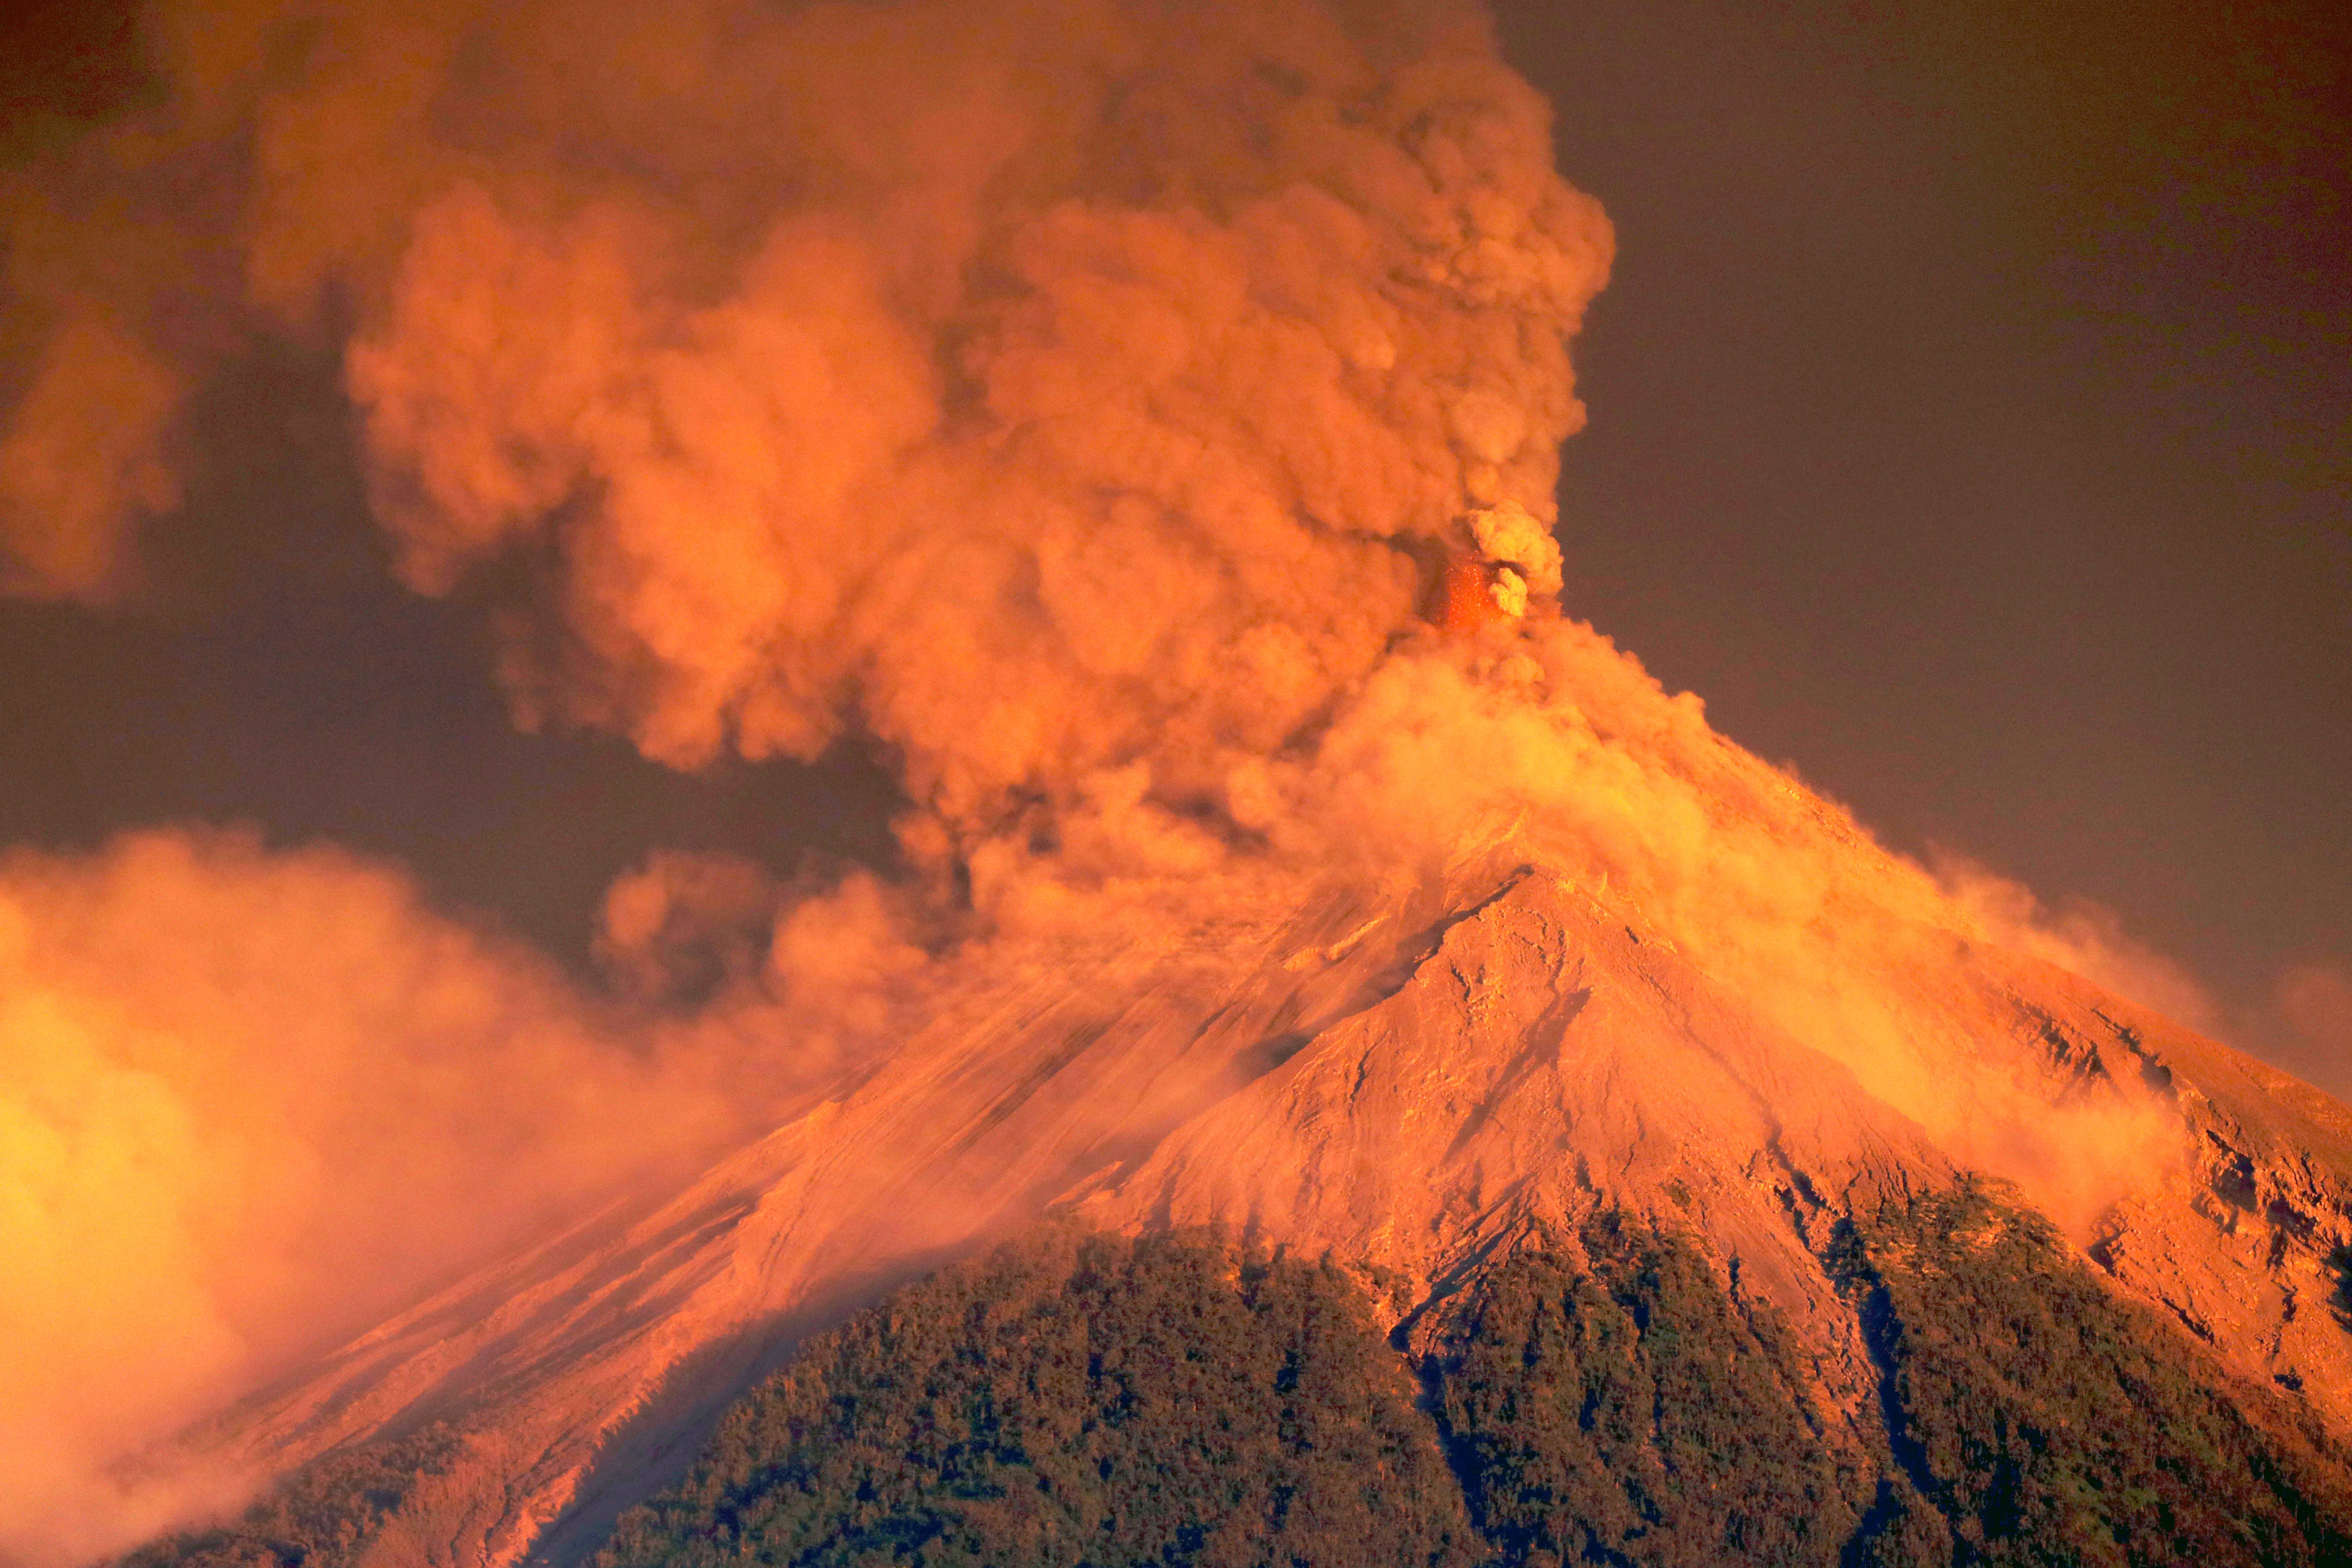 原创地球最大的超级火山黄石公园火山一旦喷发会造成怎样的灾难